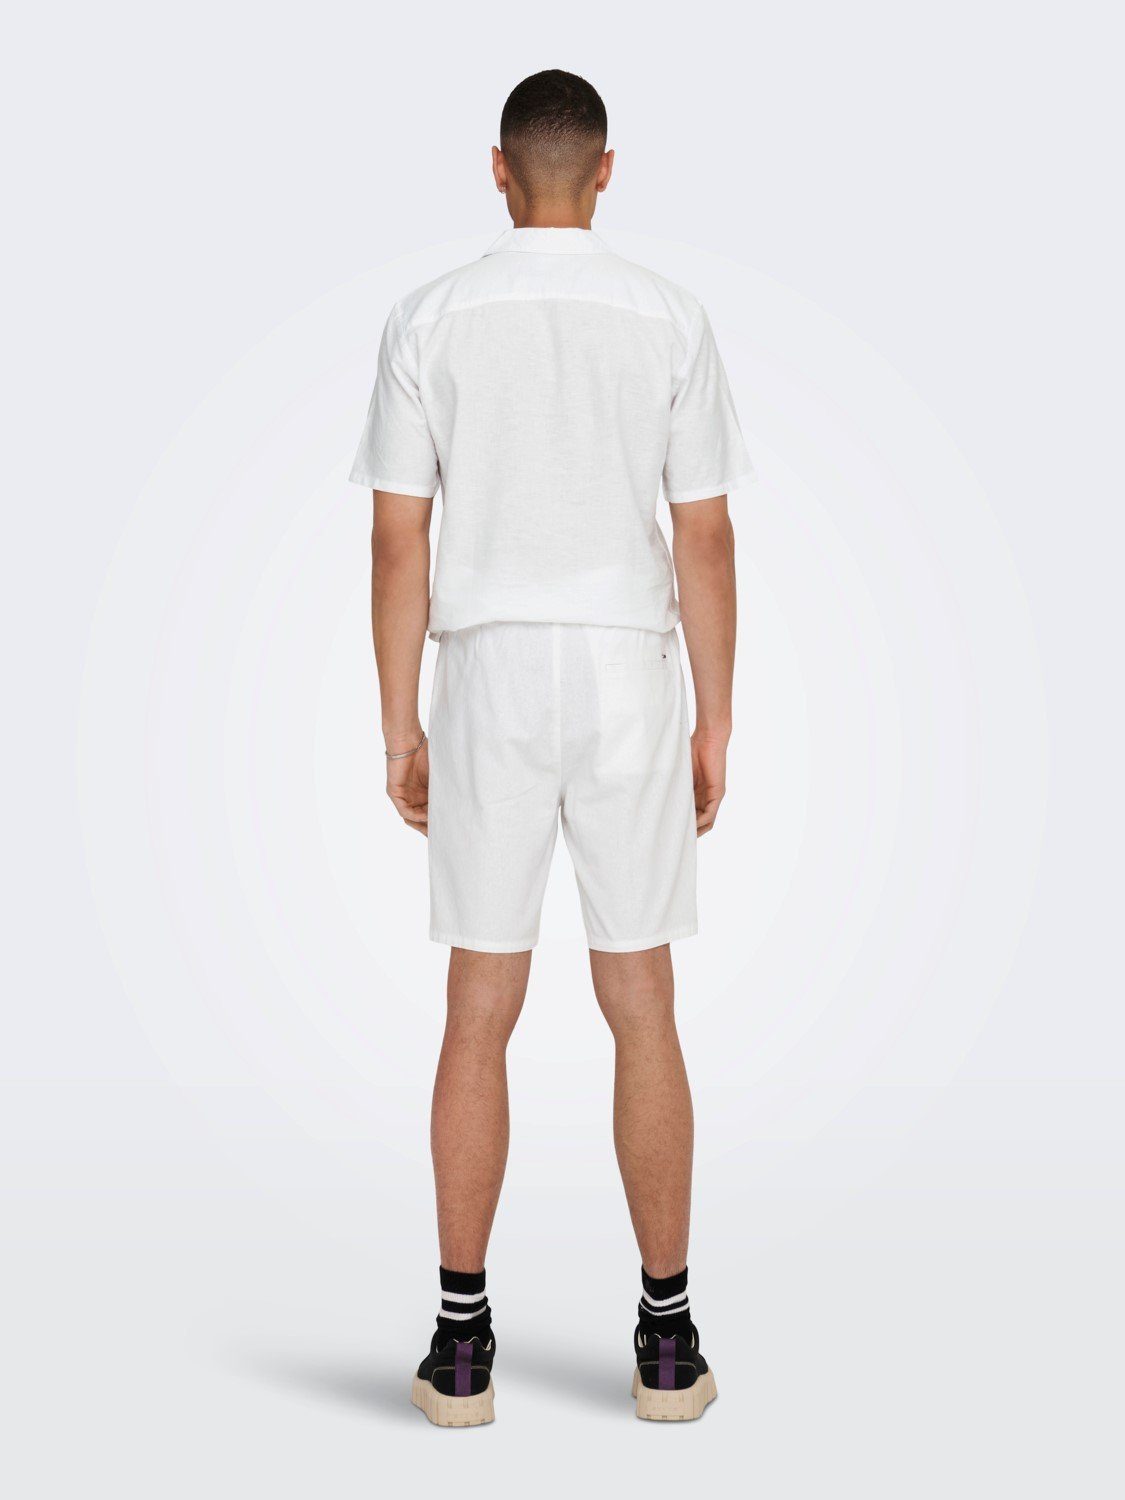 ONLY & SONS Chinoshorts 5058 Hose Weiß ONSLINUS in Leichte Bermuda Stoff Shorts